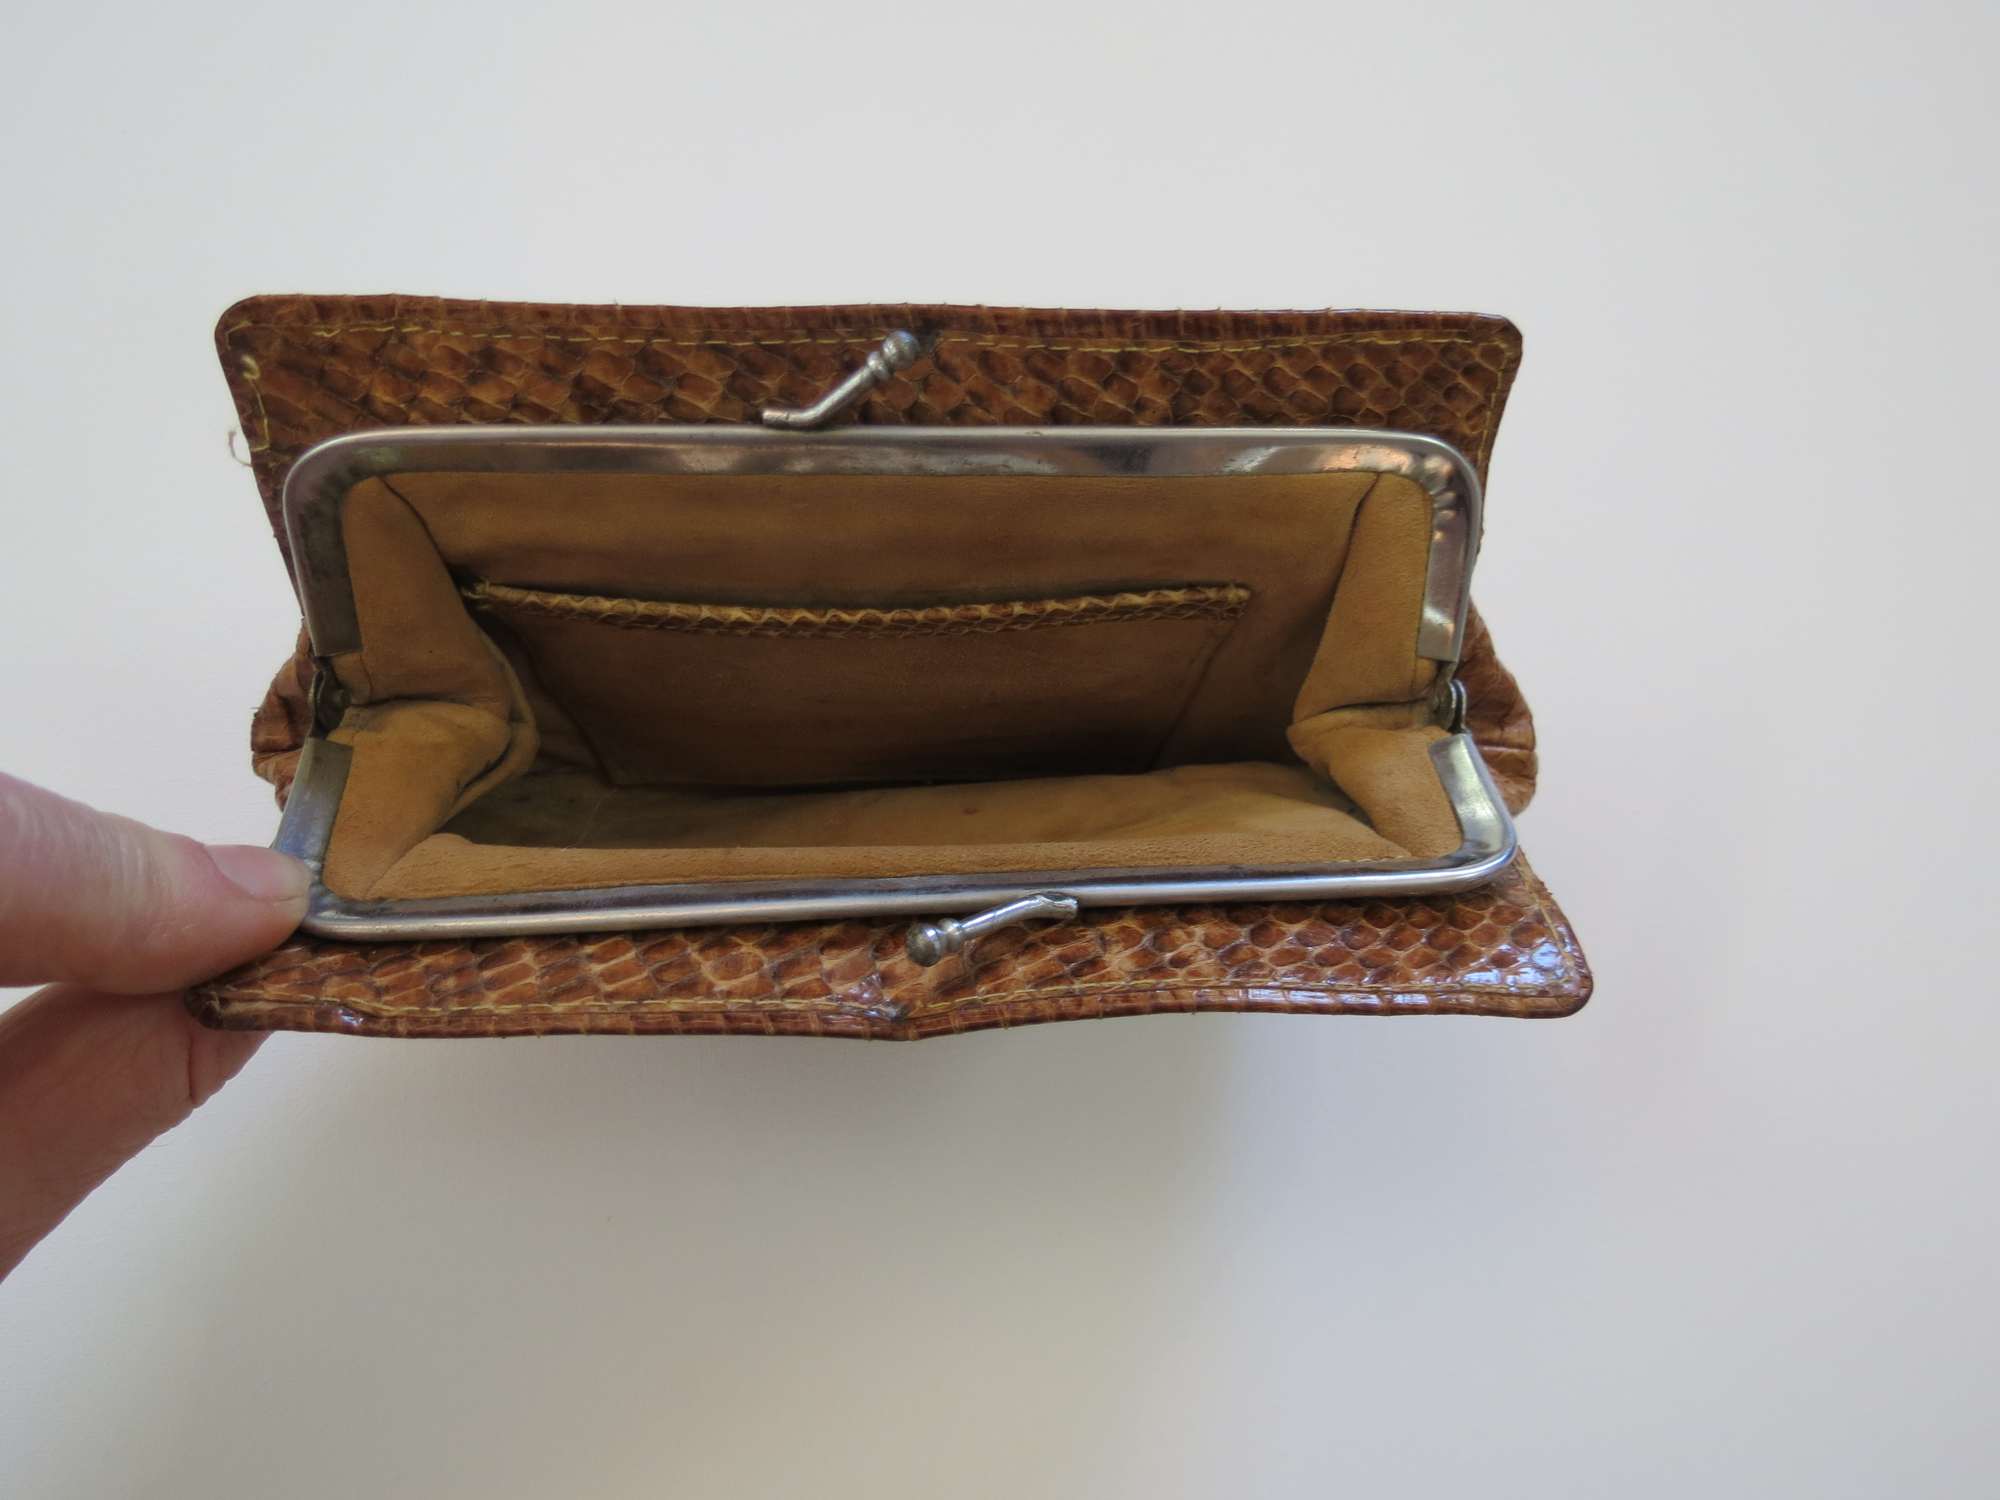 vintage brown snake skin purse or clutch bag 1950s 1960s